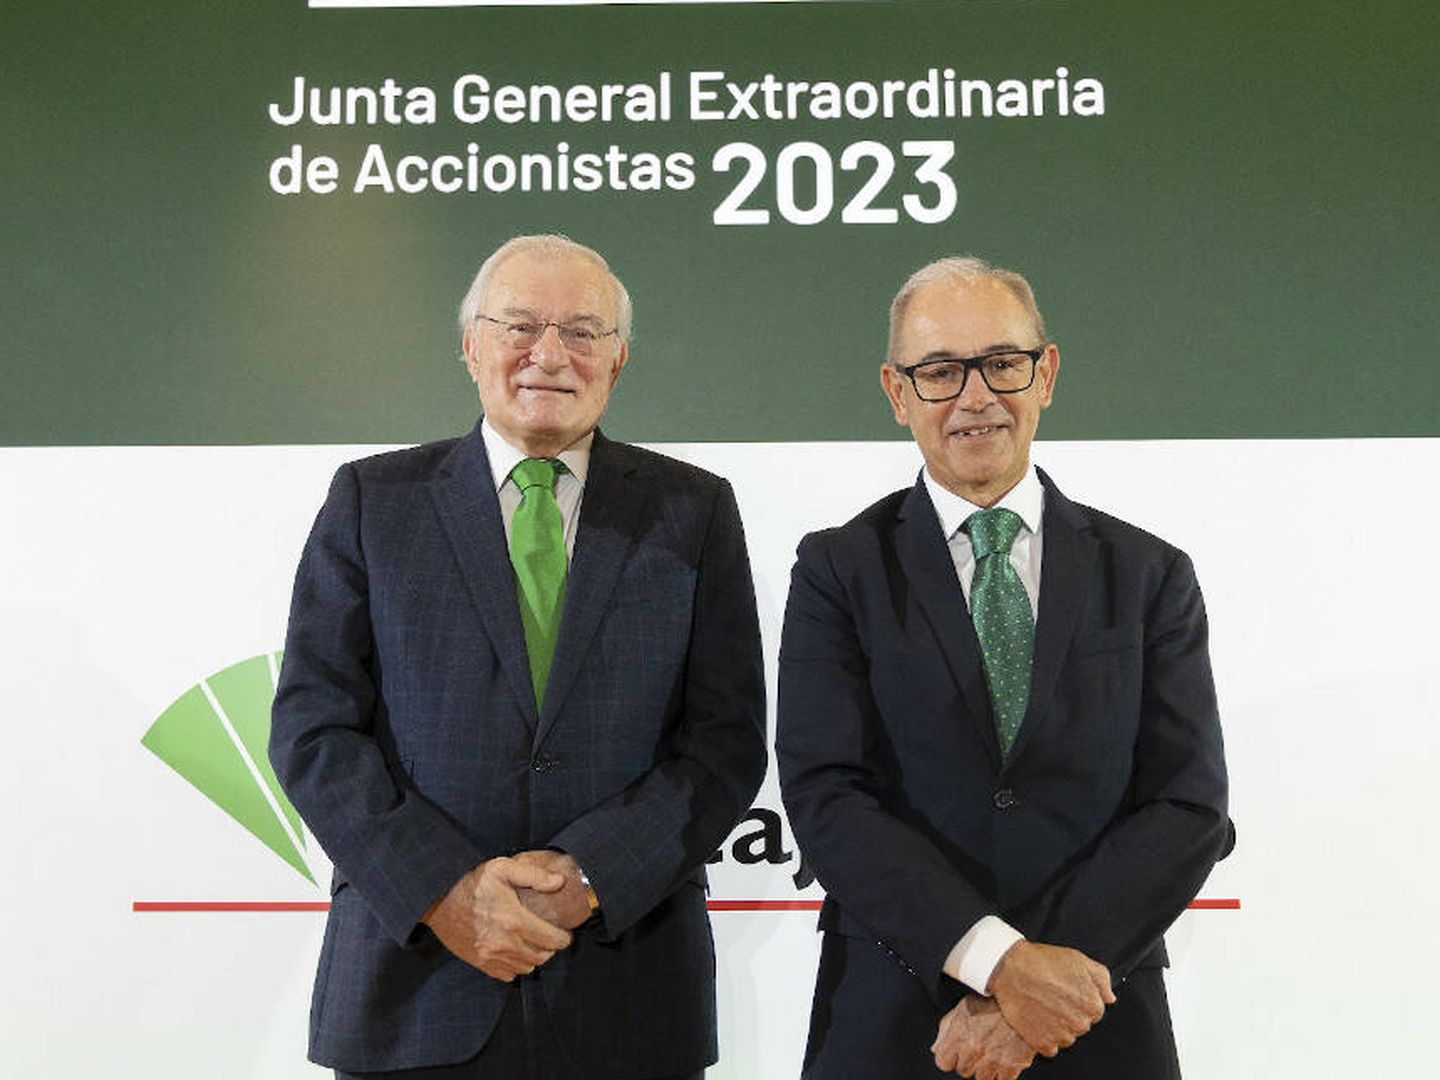 Manuel Azuaga (i), presidente de Unicaja Banco, y el CEO, Isidro Rubiales (d). (Unicaja)